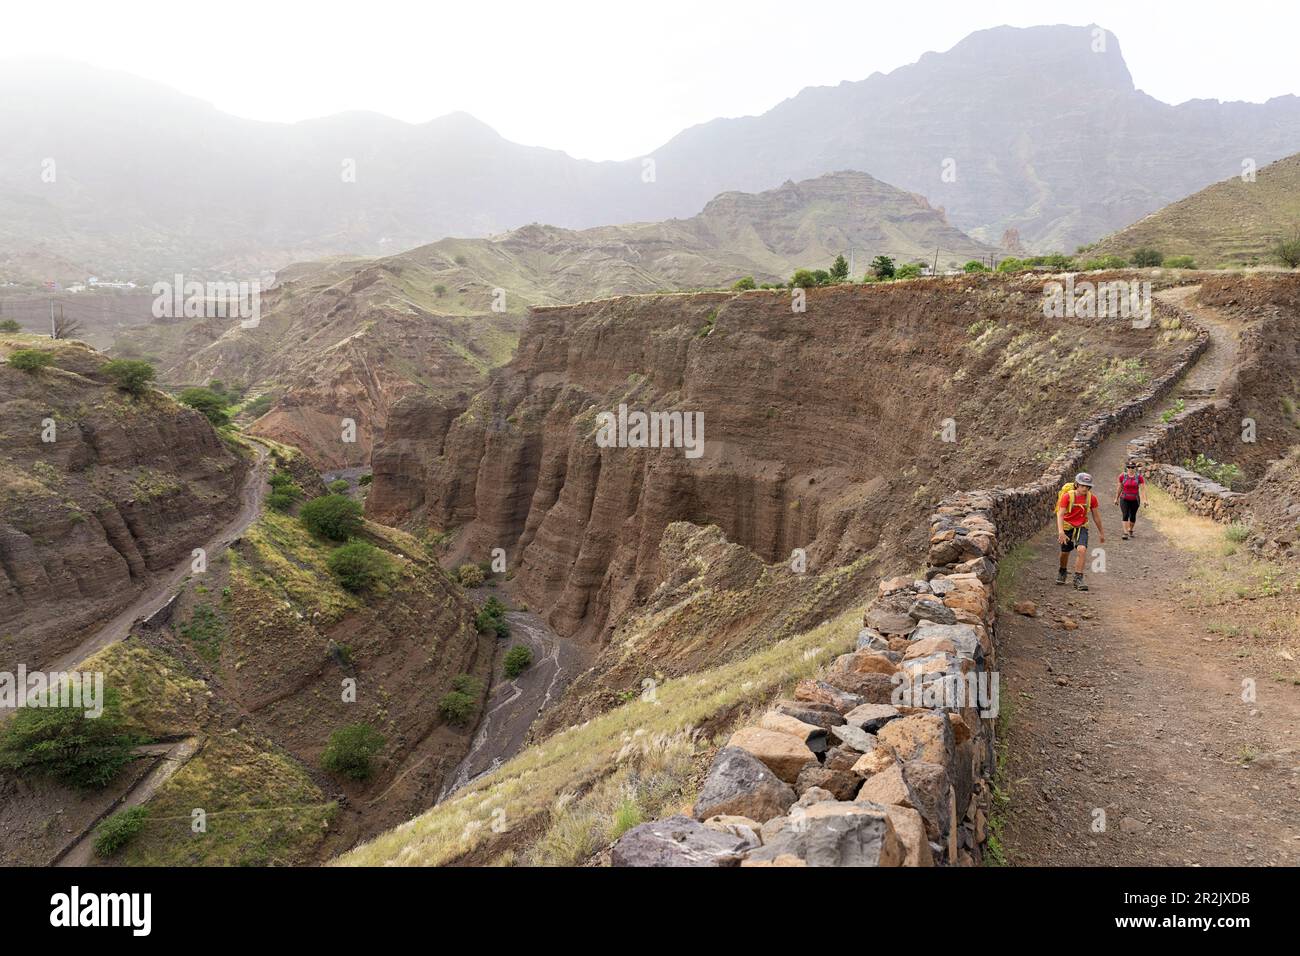 Mère et fils, touristes, randonnée sur un sentier près des canyons près du village de Cha de Morte à l'intérieur de l'île de Santo Antao, Cabo verde Banque D'Images